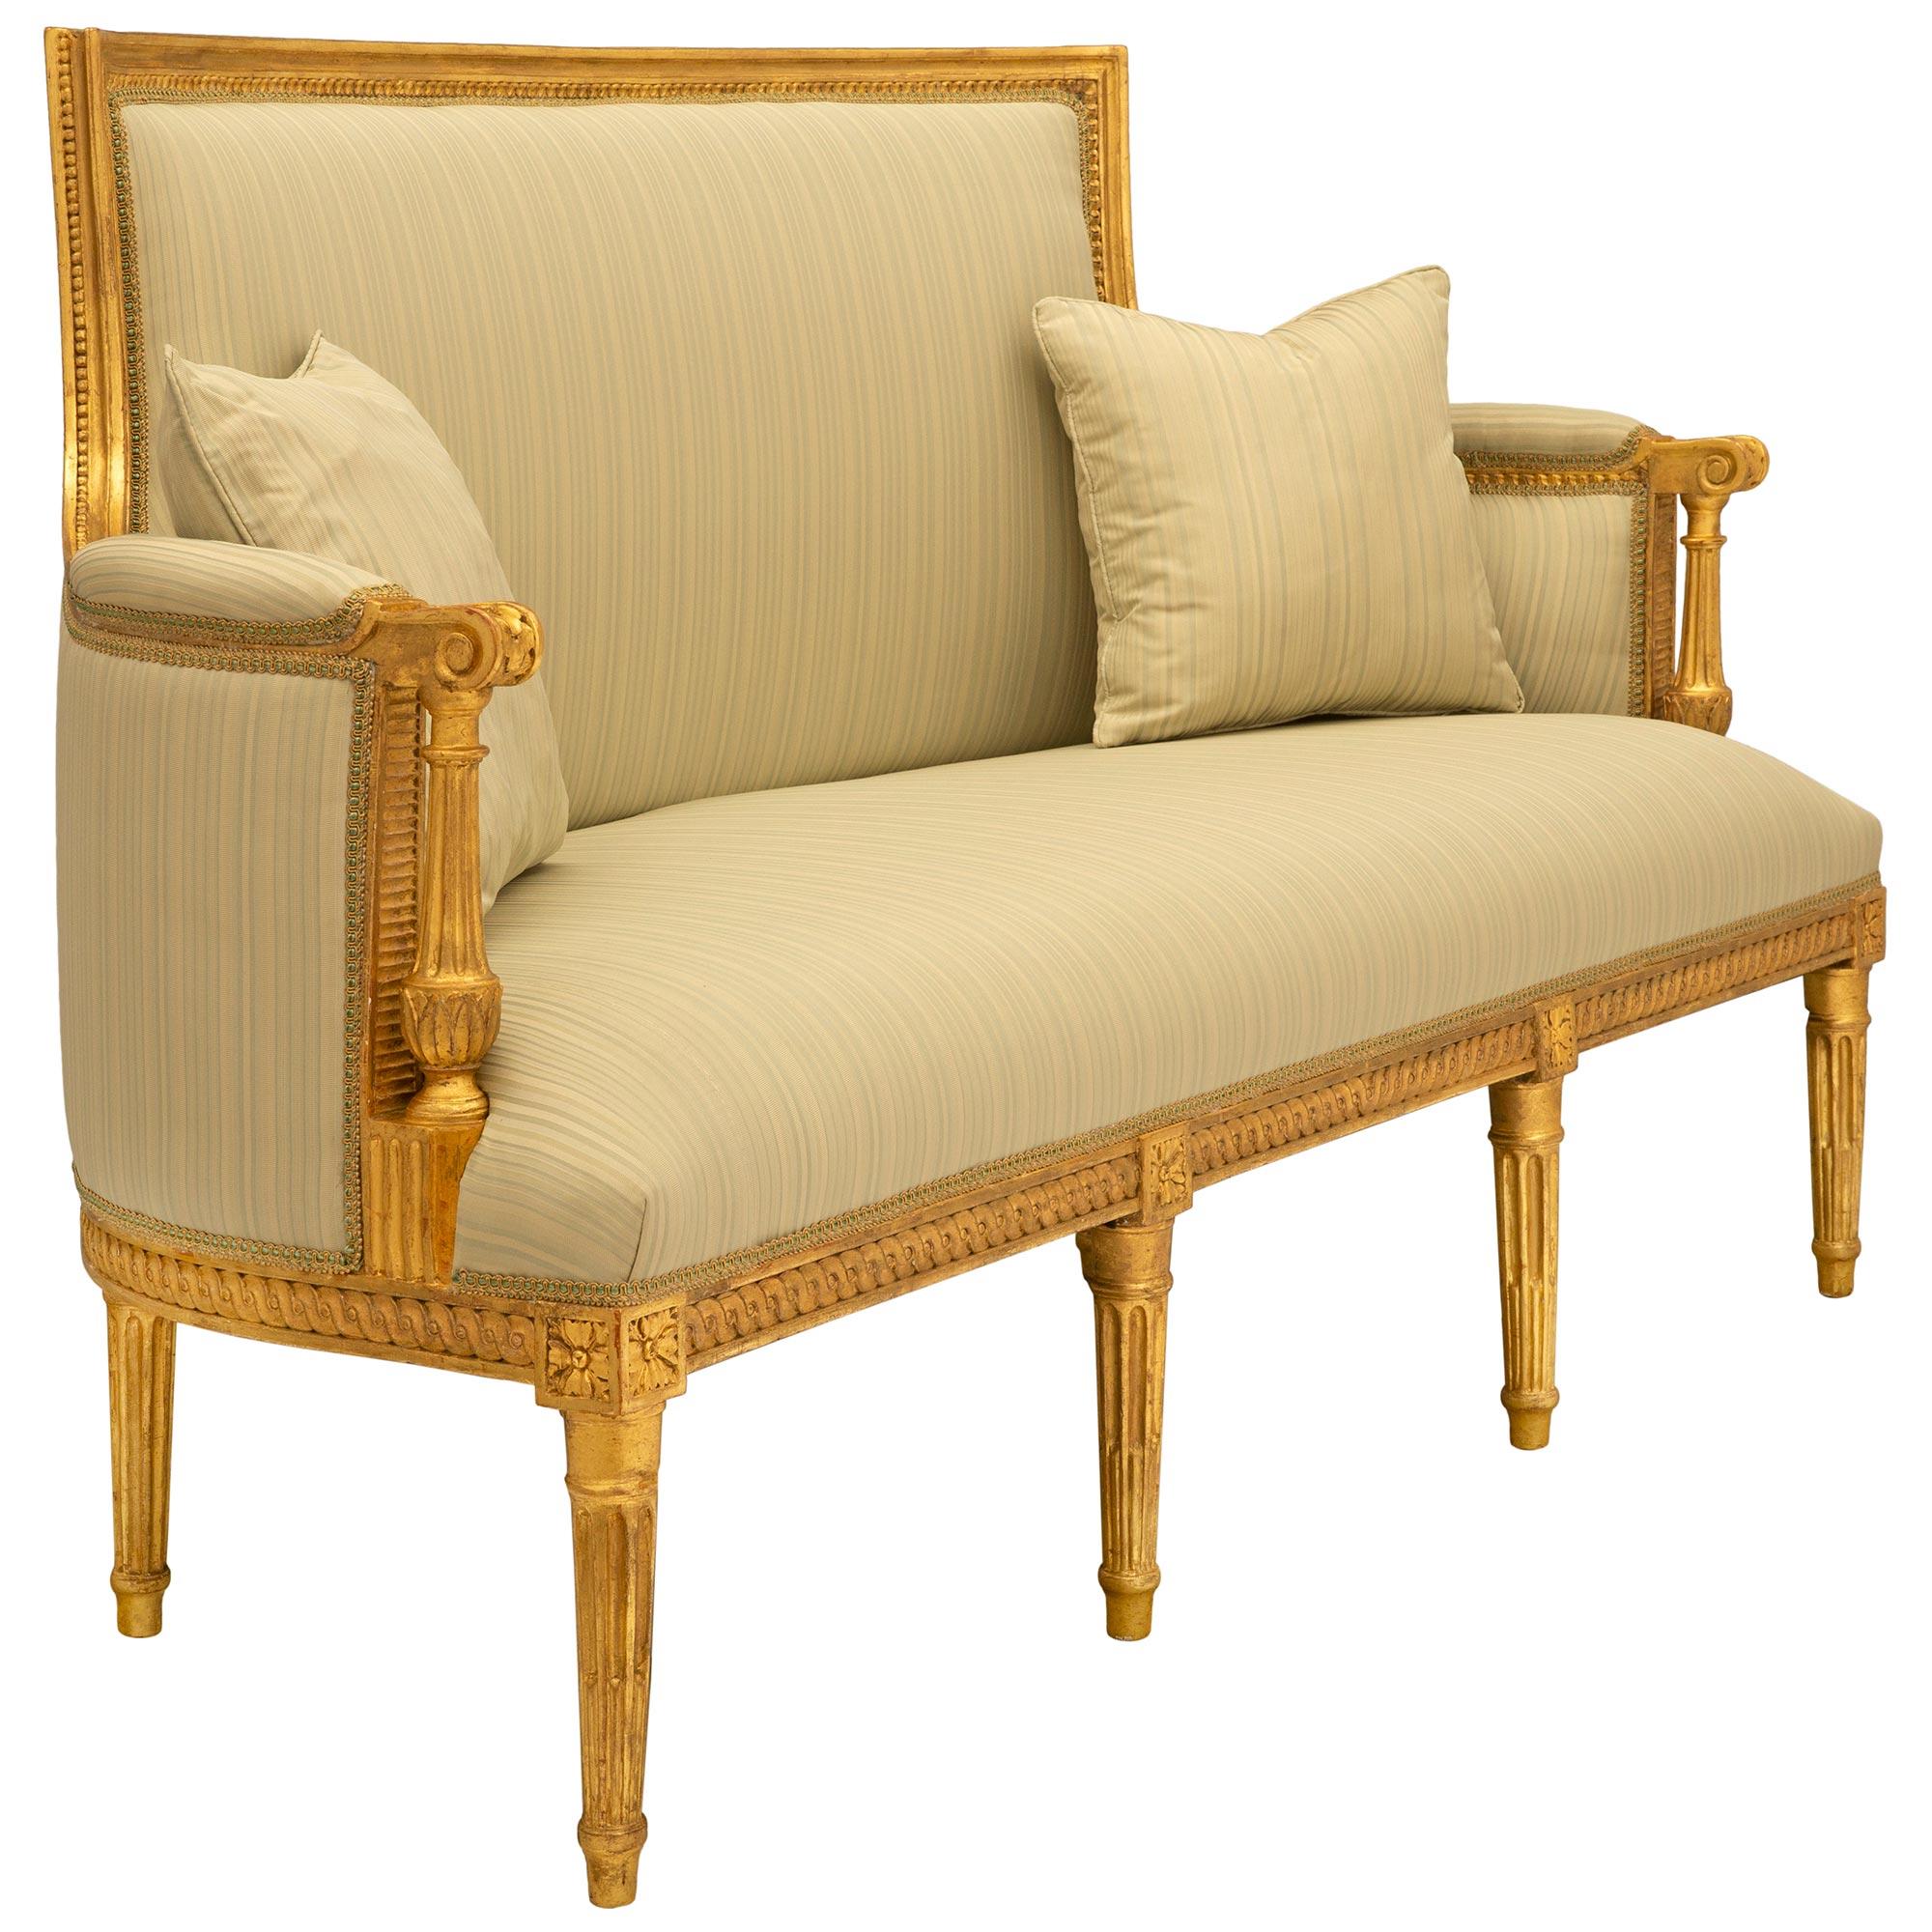 Ein schönes und äußerst elegantes französisches Canapé-Sofa aus vergoldetem Holz aus dem 18. Das Sofa steht auf sieben zierlichen, kreisförmig verjüngten, kannelierten Beinen unter markanten Blockrosetten, die reich geschnitzte, ineinandergreifende